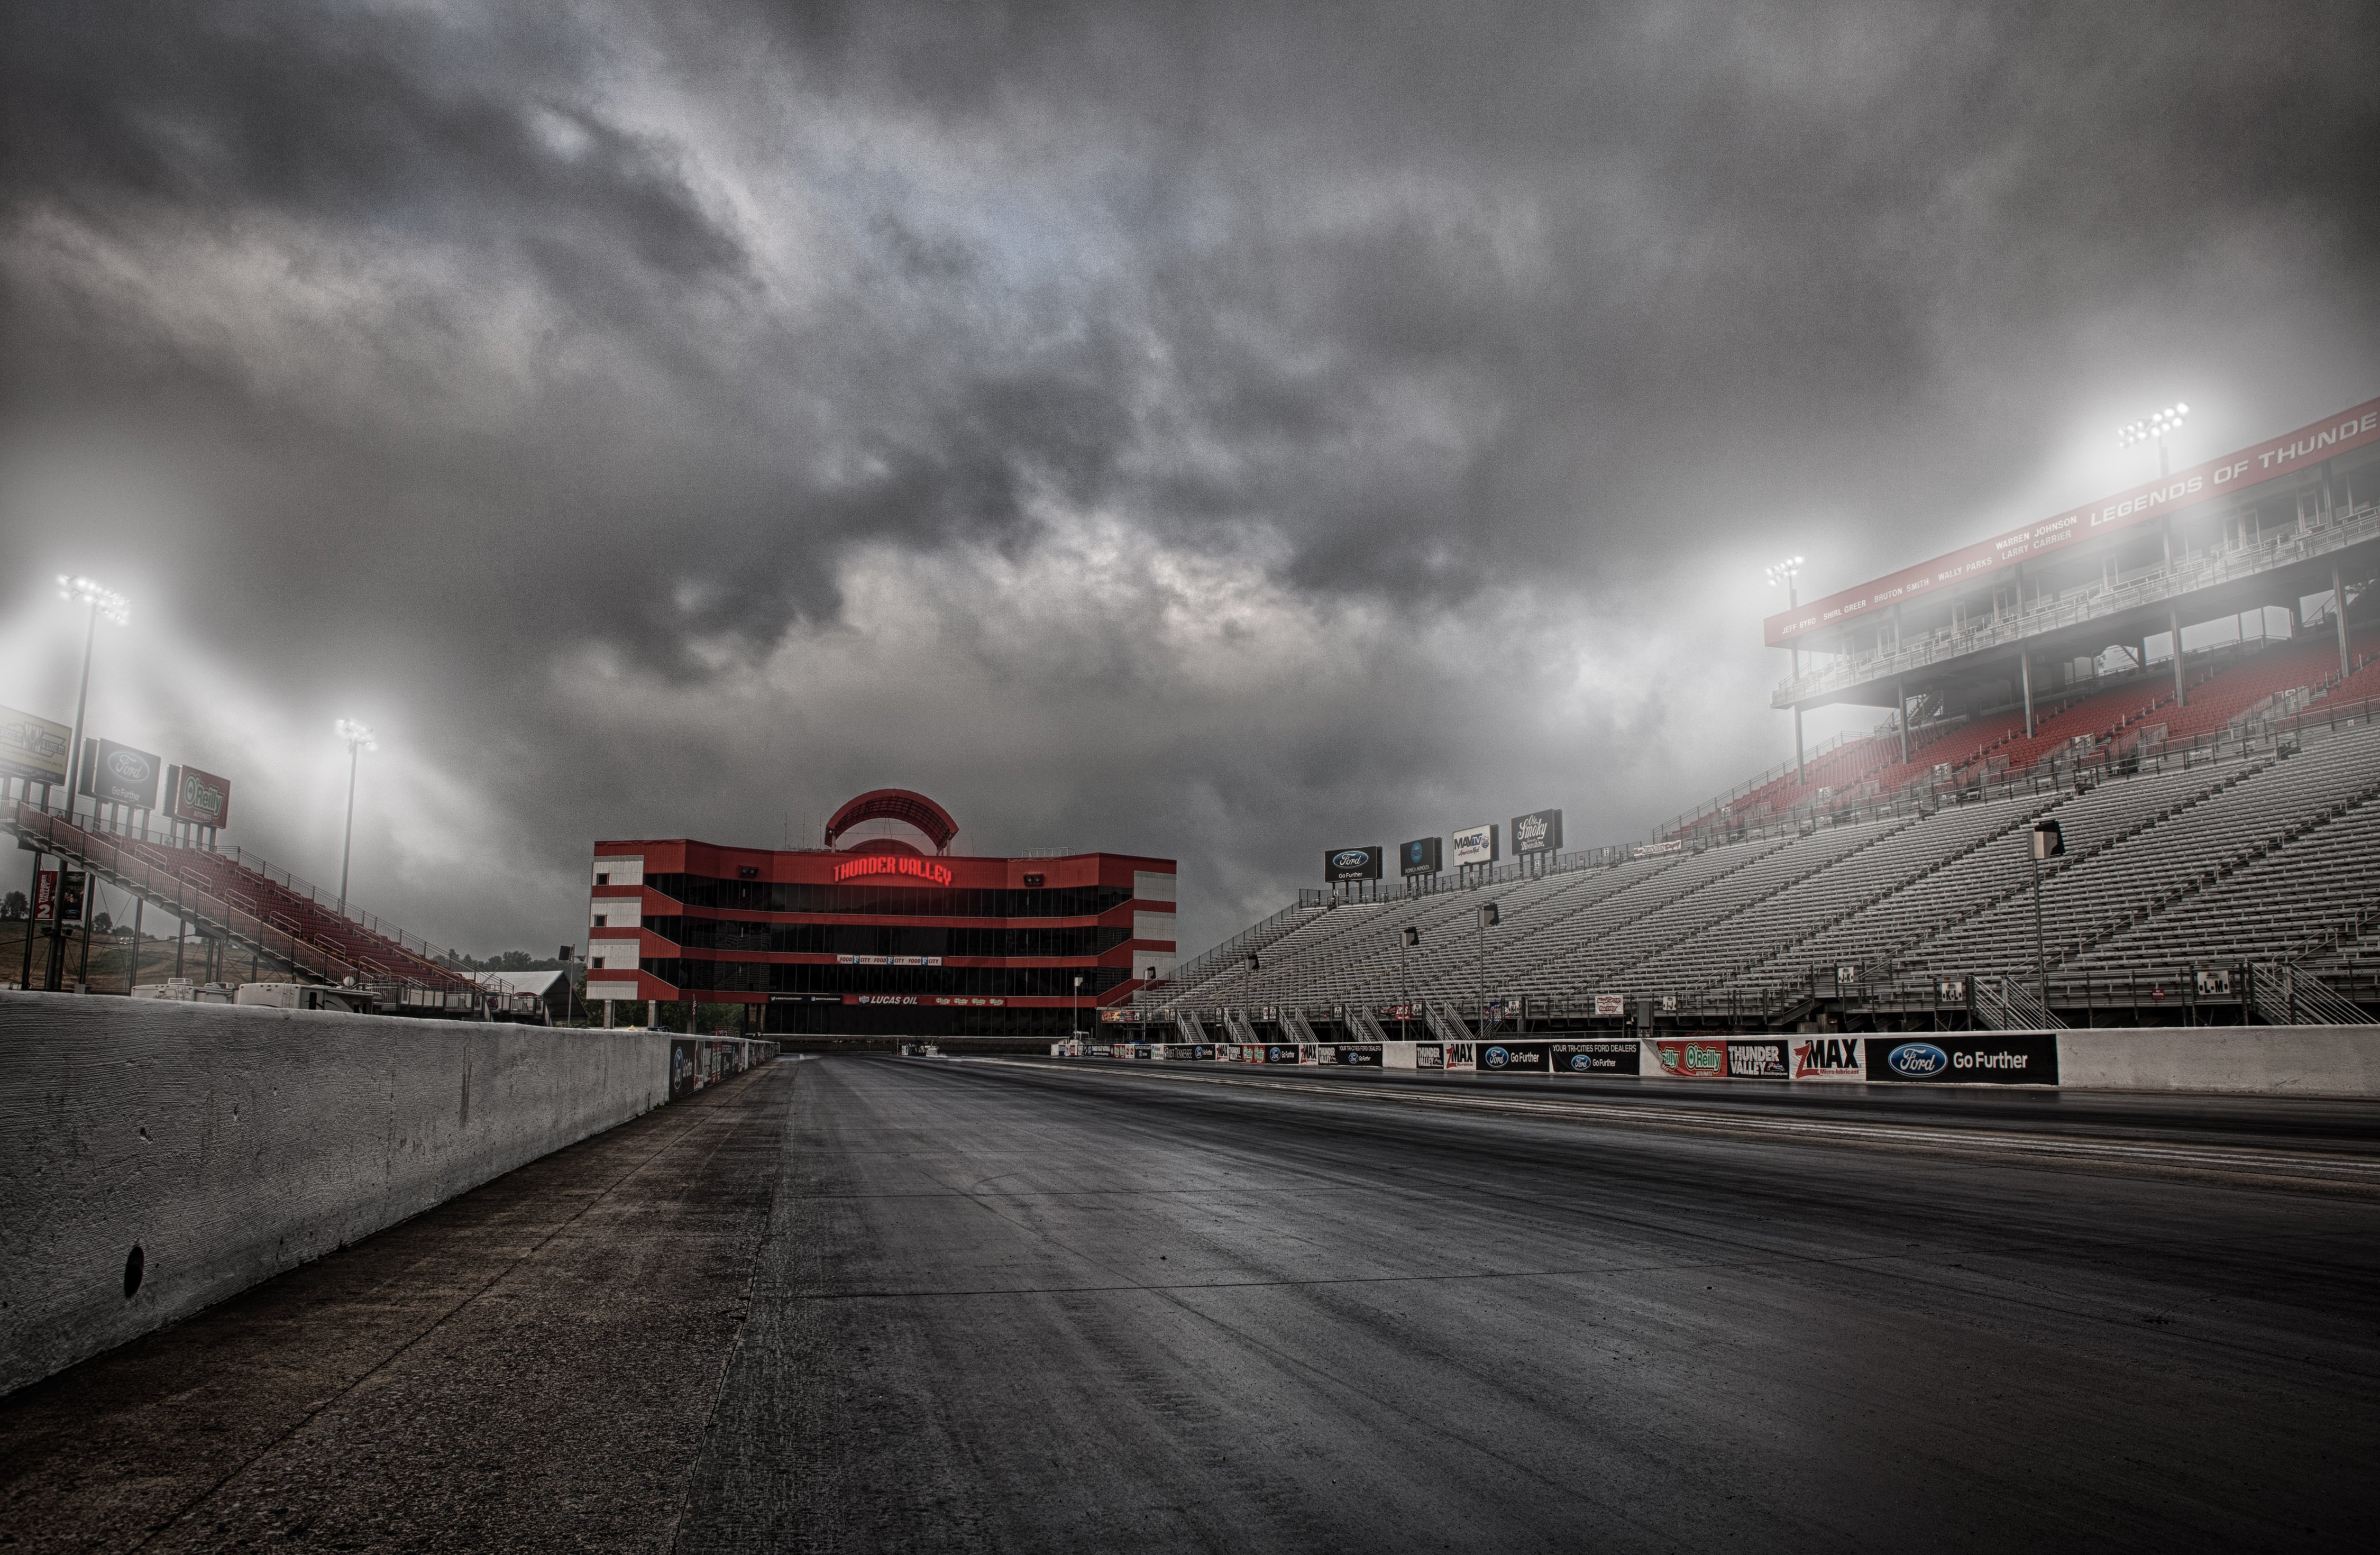 レーストラック壁紙,競馬場,空,雲,スタジアム,雰囲気